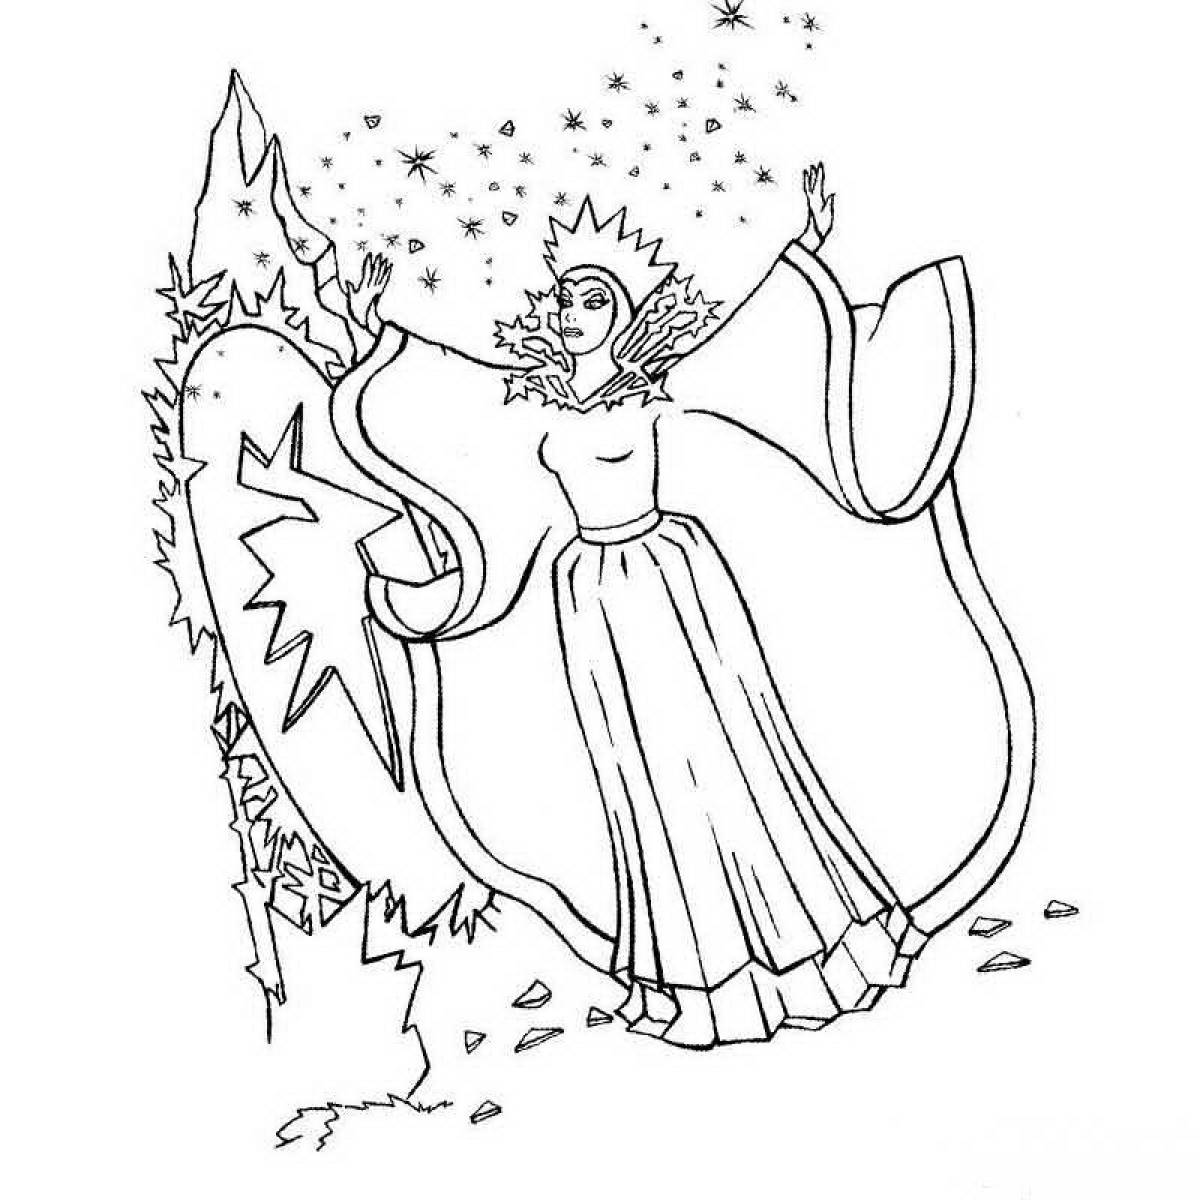 Эскиз рисунка снежной королевы